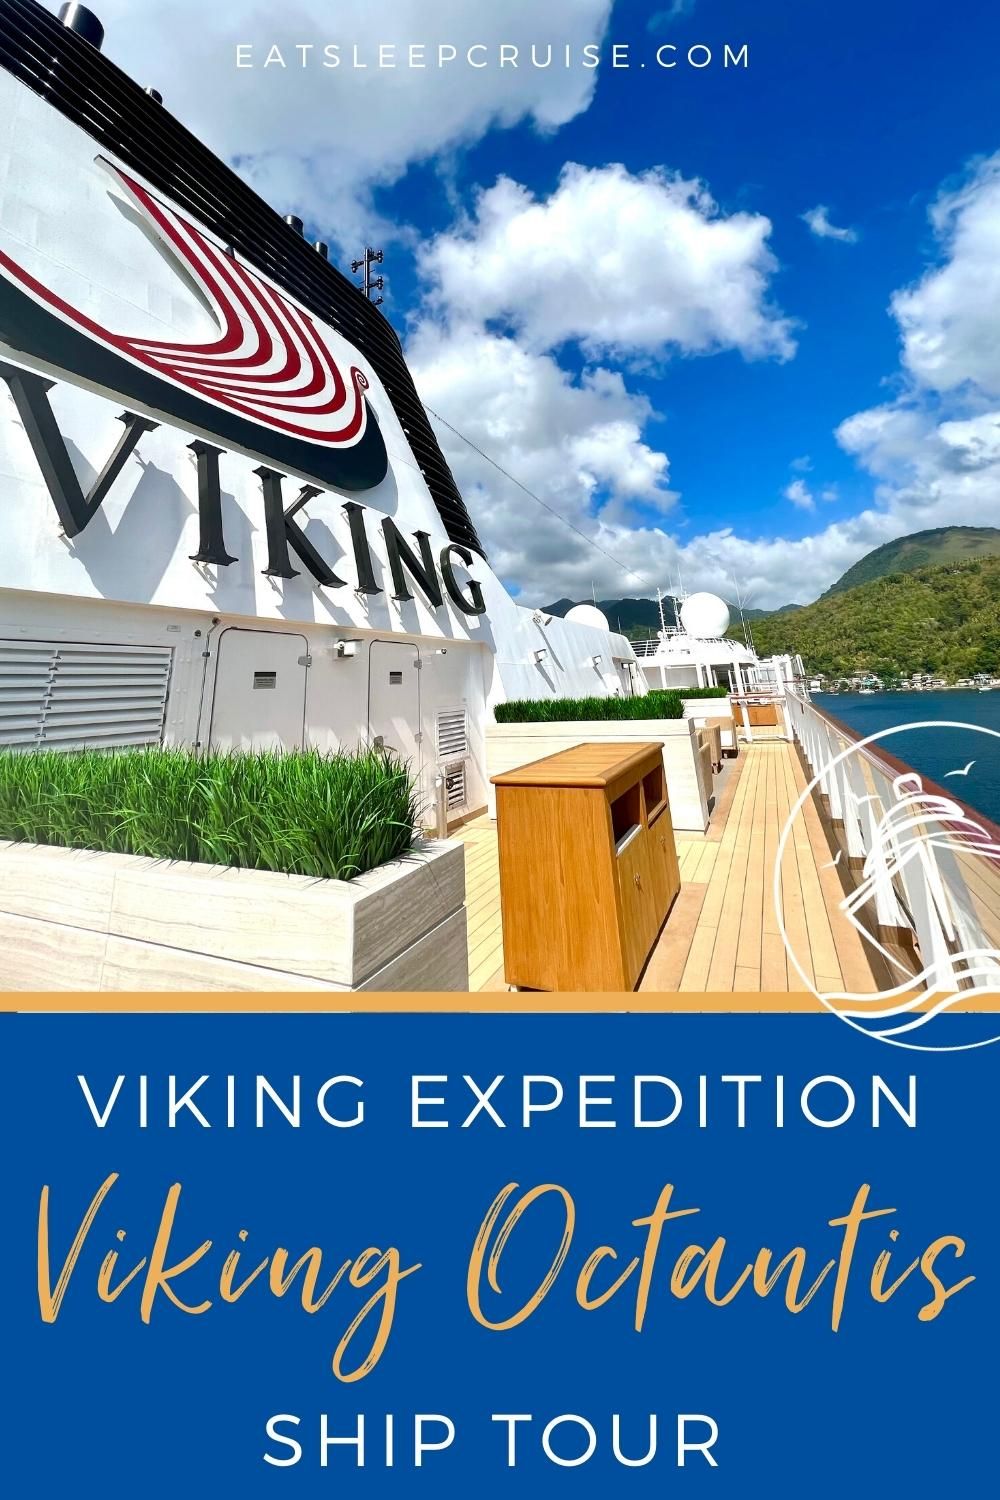 Viking Octantis Ship Tour